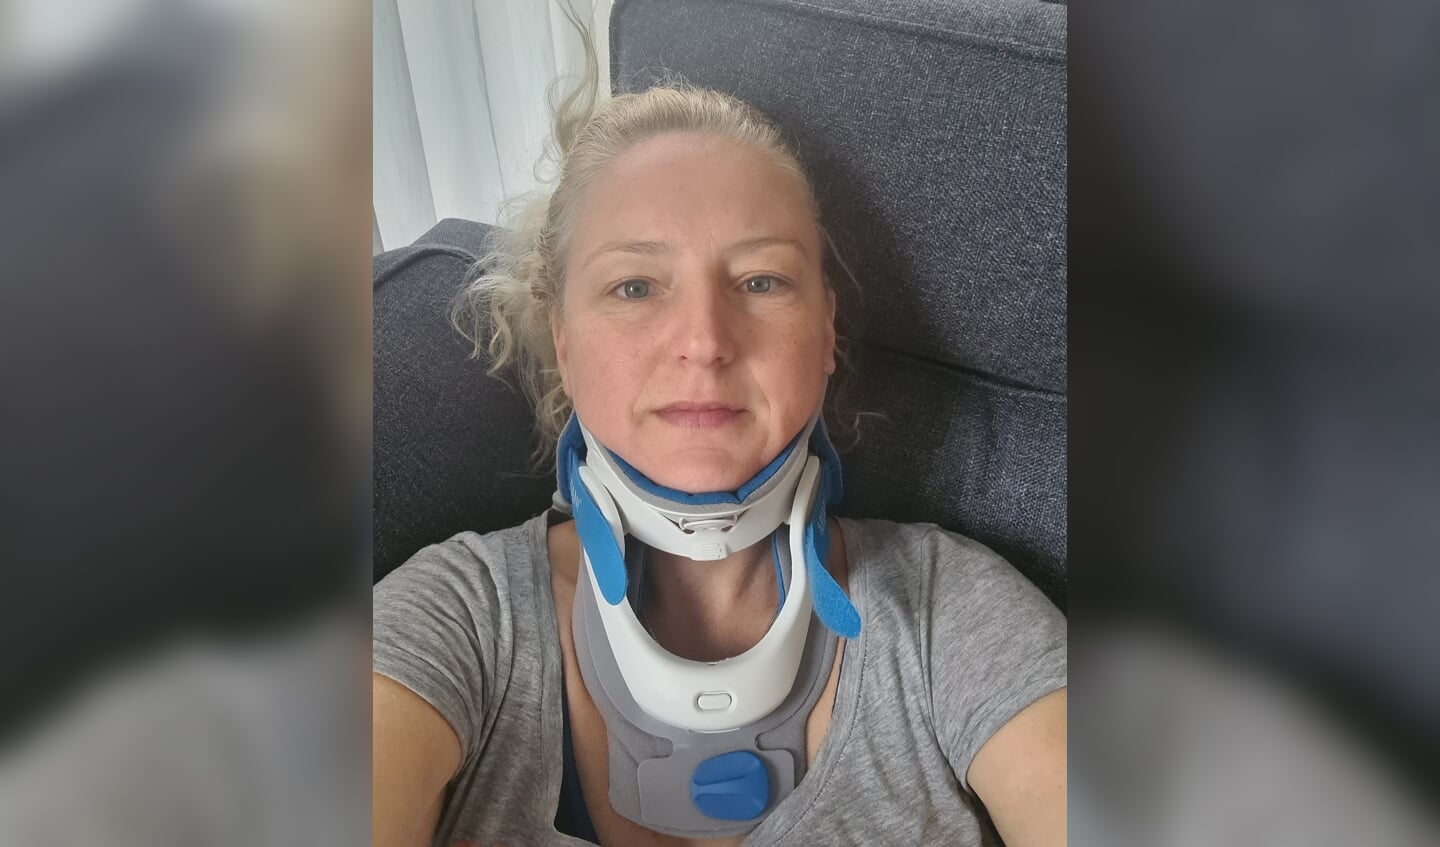 Marina van der Kruis hoopt met heel haar hart dat een operatie mogelijk wordt gemaakt. 